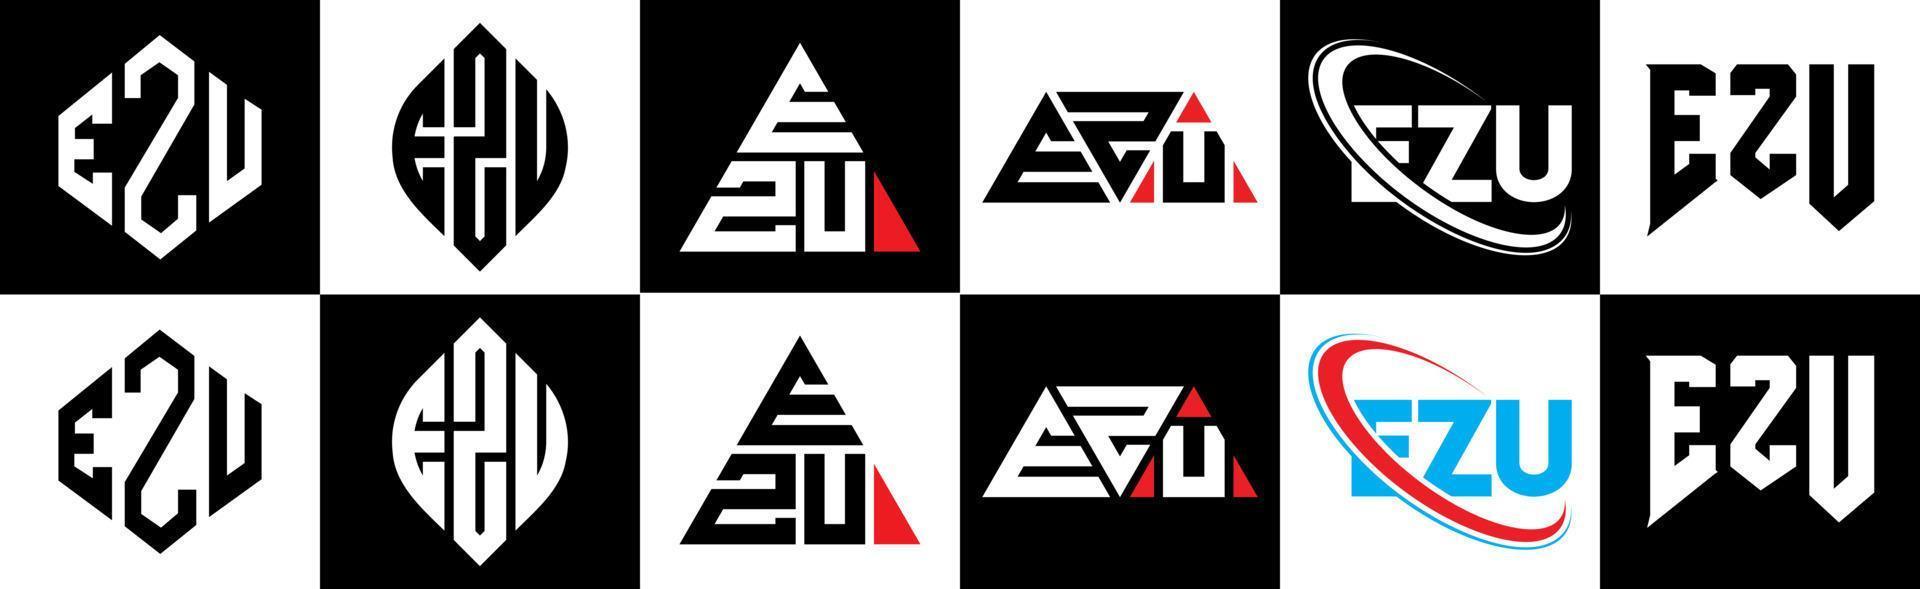 ezu-Buchstaben-Logo-Design in sechs Stilen. ezu Polygon, Kreis, Dreieck, Sechseck, flacher und einfacher Stil mit schwarz-weißem Buchstabenlogo in einer Zeichenfläche. ezu minimalistisches und klassisches Logo vektor